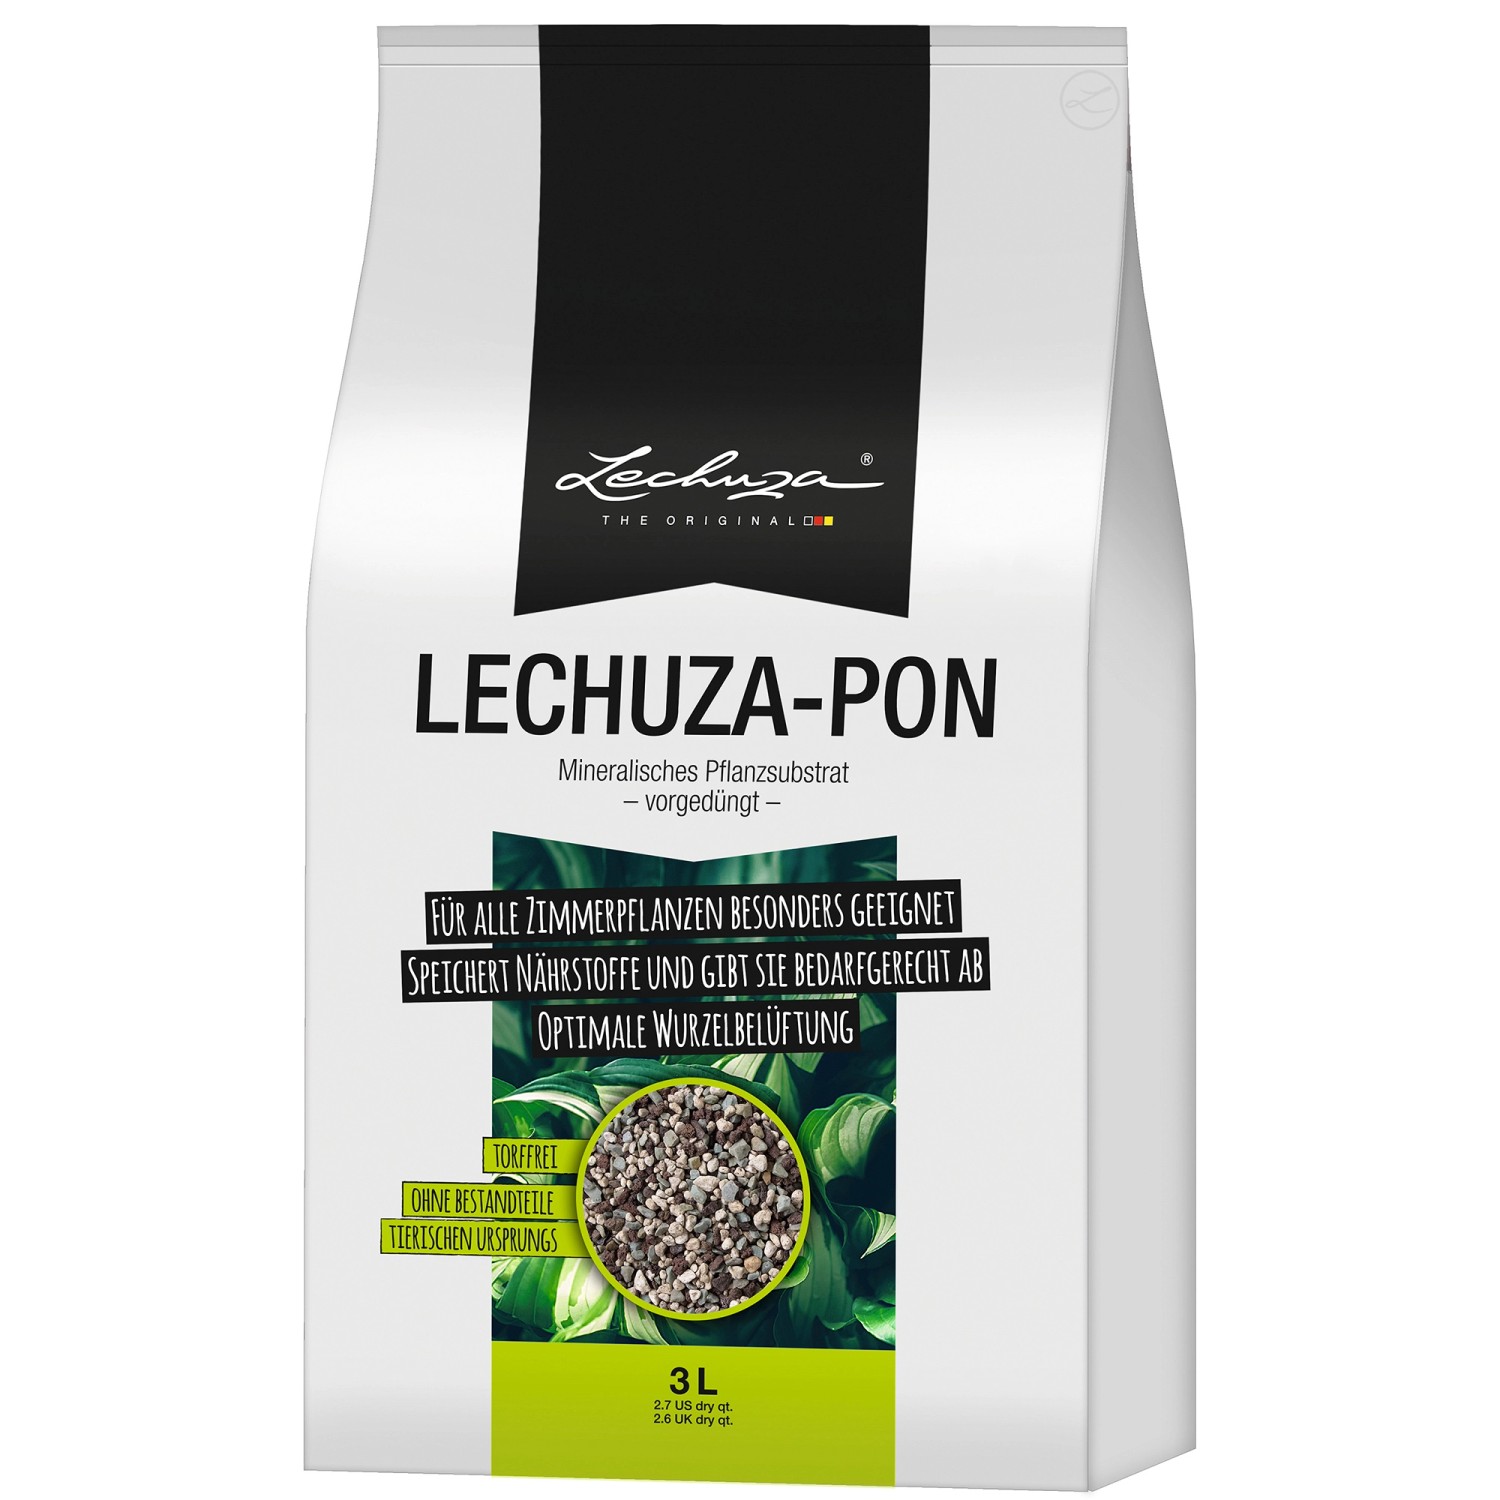 Pflanzsubstrat Lechuza-Pon 3 Liter für Zimmerpflanzen von Lechuza